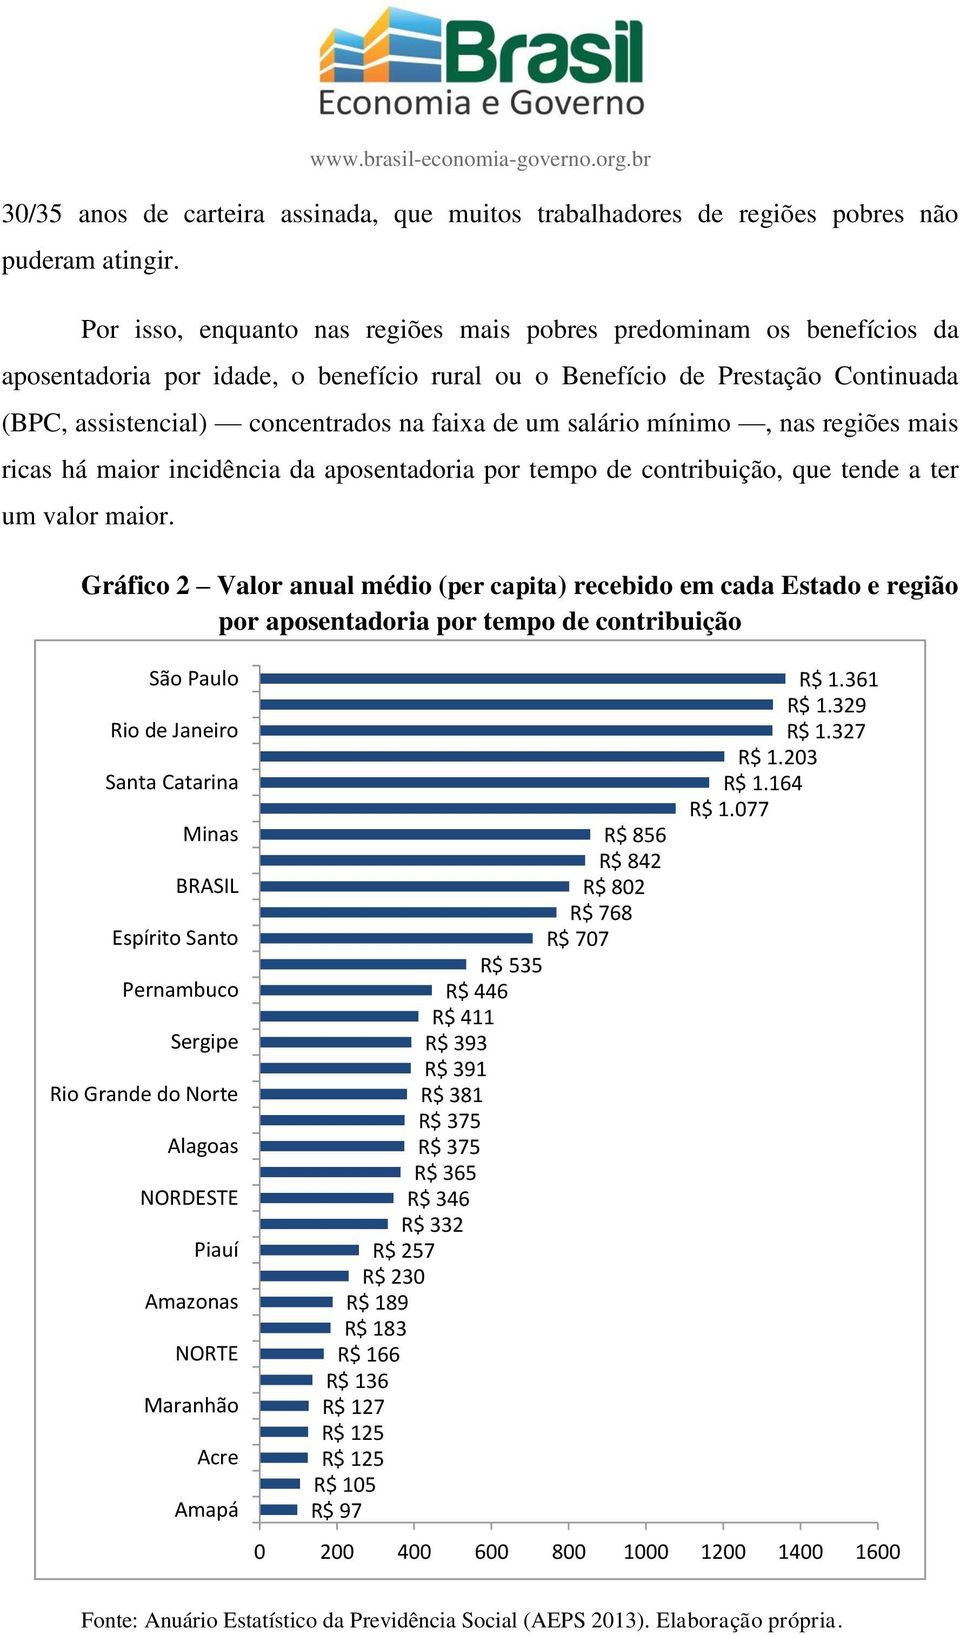 um salário mínimo, nas regiões mais ricas há maior incidência da aposentadoria por tempo de contribuição, que tende a ter um valor maior.